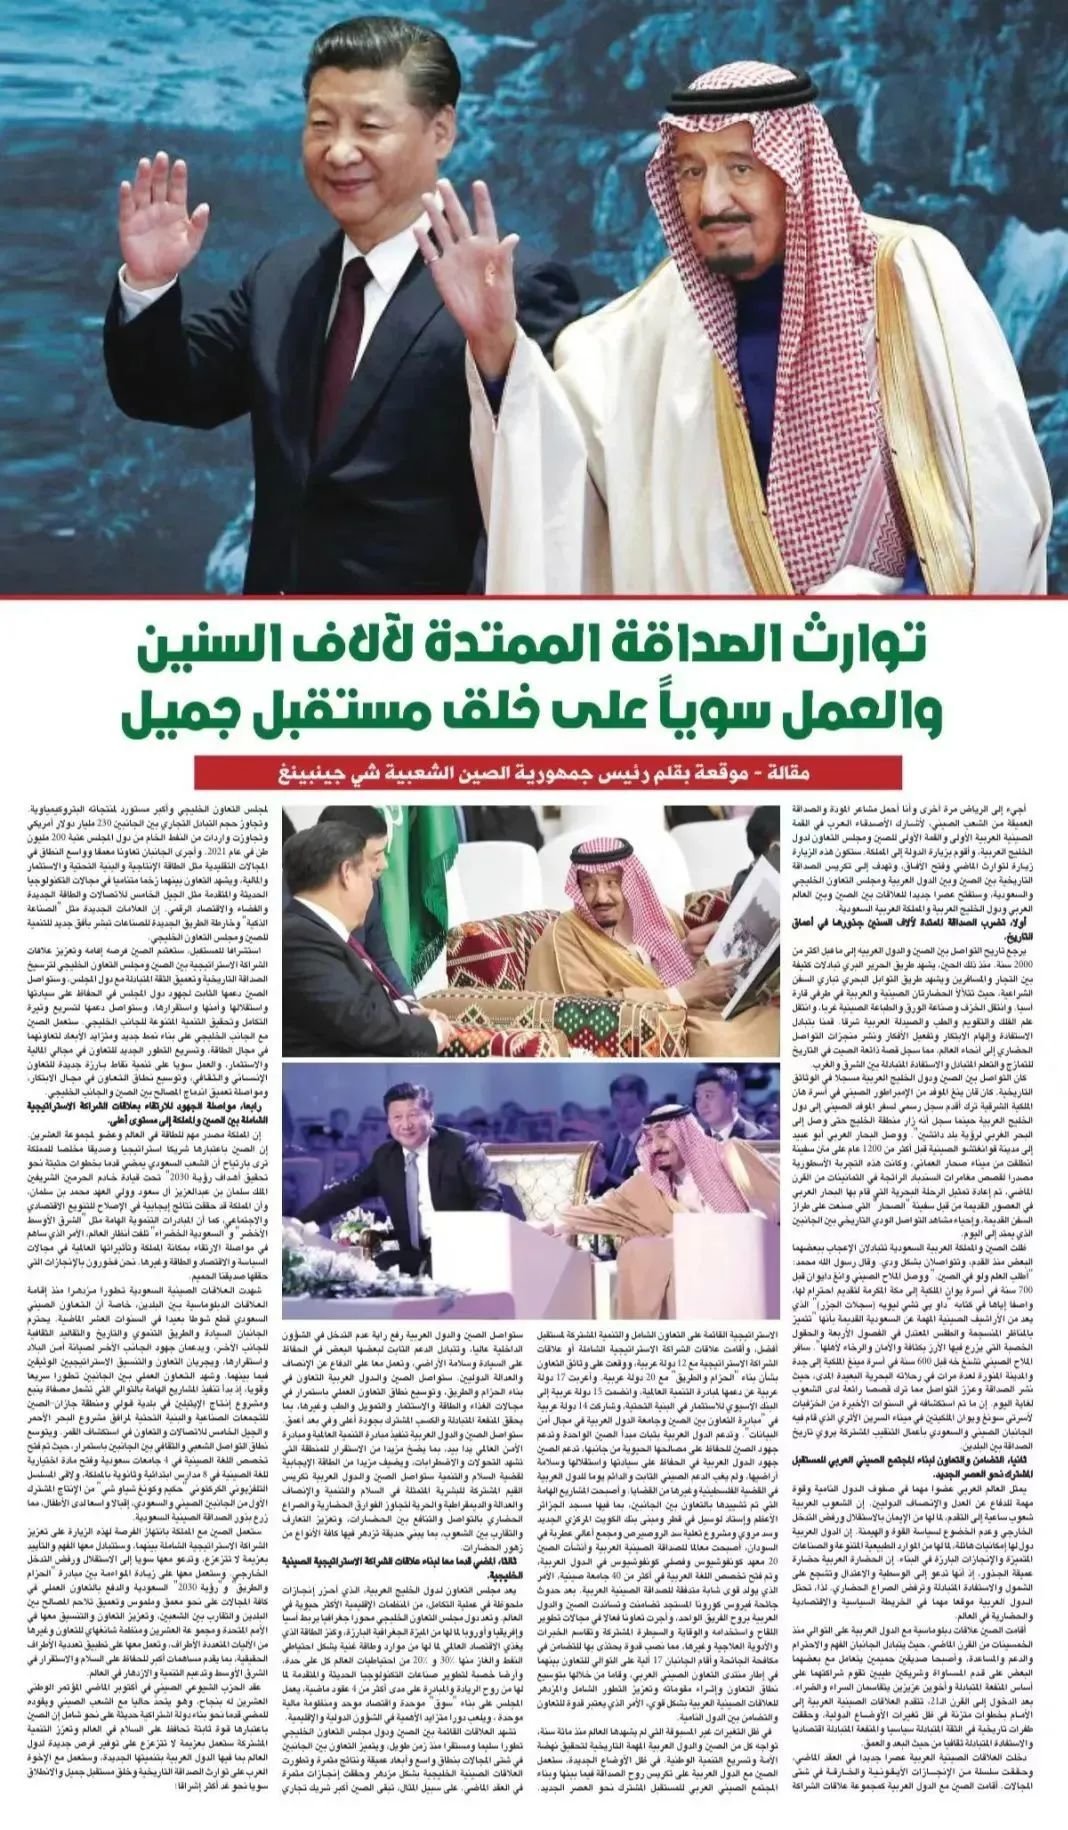 2022年12月8日，习近平在沙特《利雅得报》发表题为《传承千年友好，共创美好未来》的署名文章。（图源：《利雅得报》）